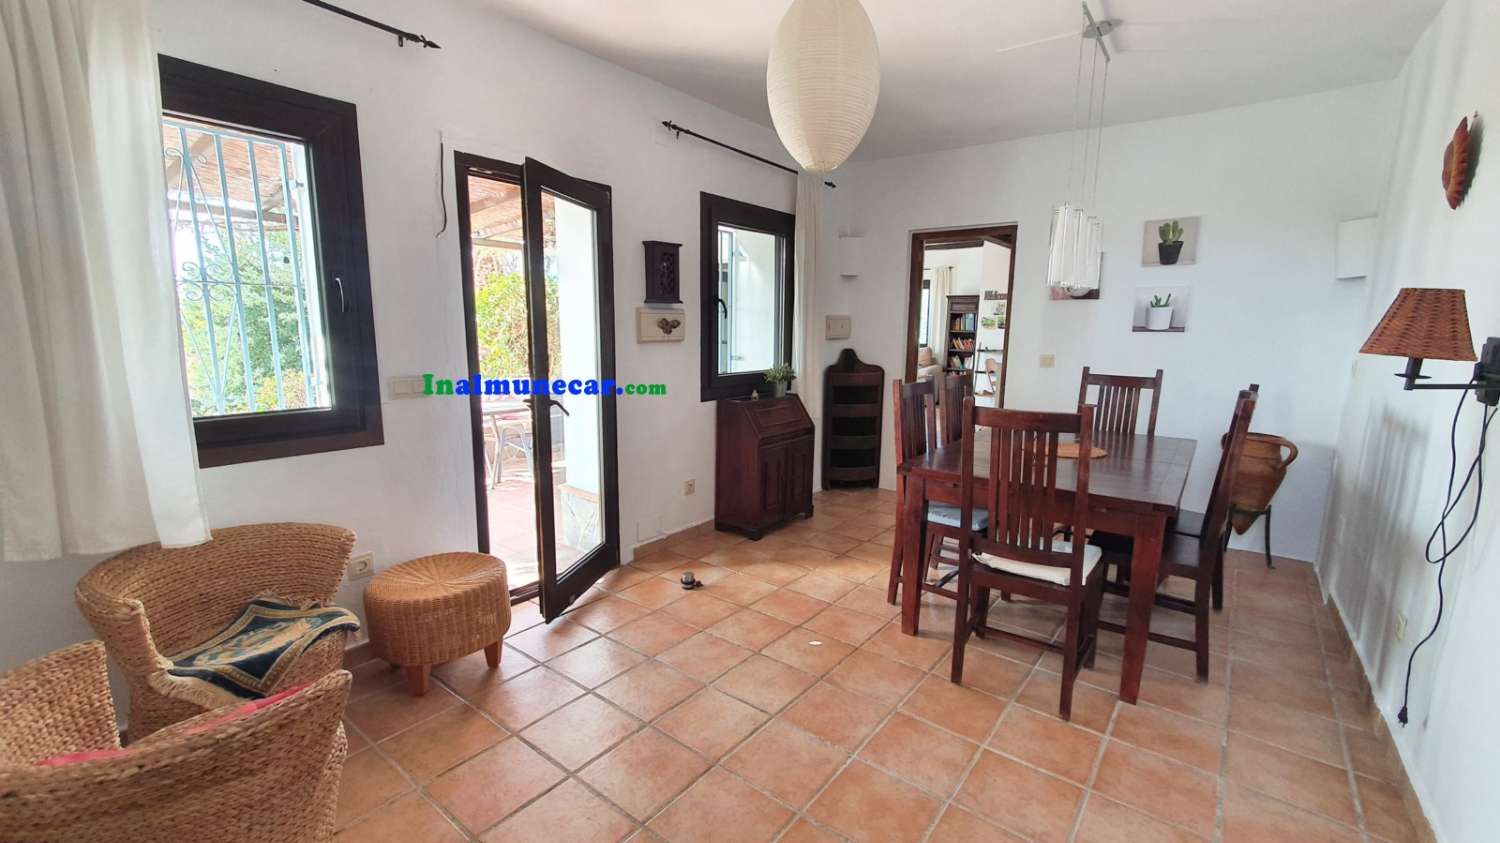 Villa de campagne à vendre située dans la Baie de La Herradura, en Andalousie.